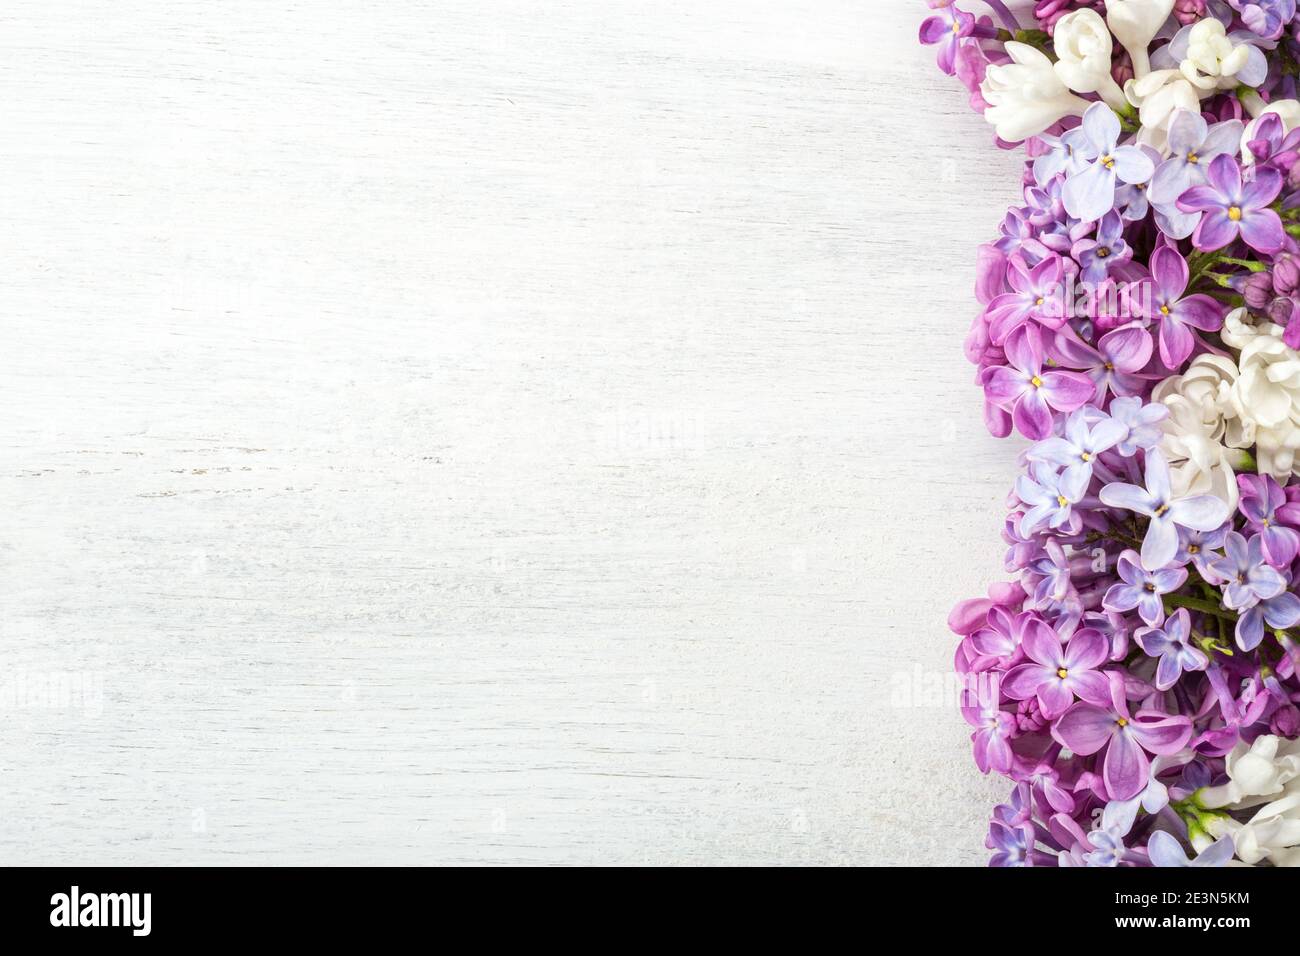 Verschiedene kleine Blüten von Lilac auf dem weißen Holz schäbigen Hintergrund. Blumenbordüre. Flach liegend. Stockfoto